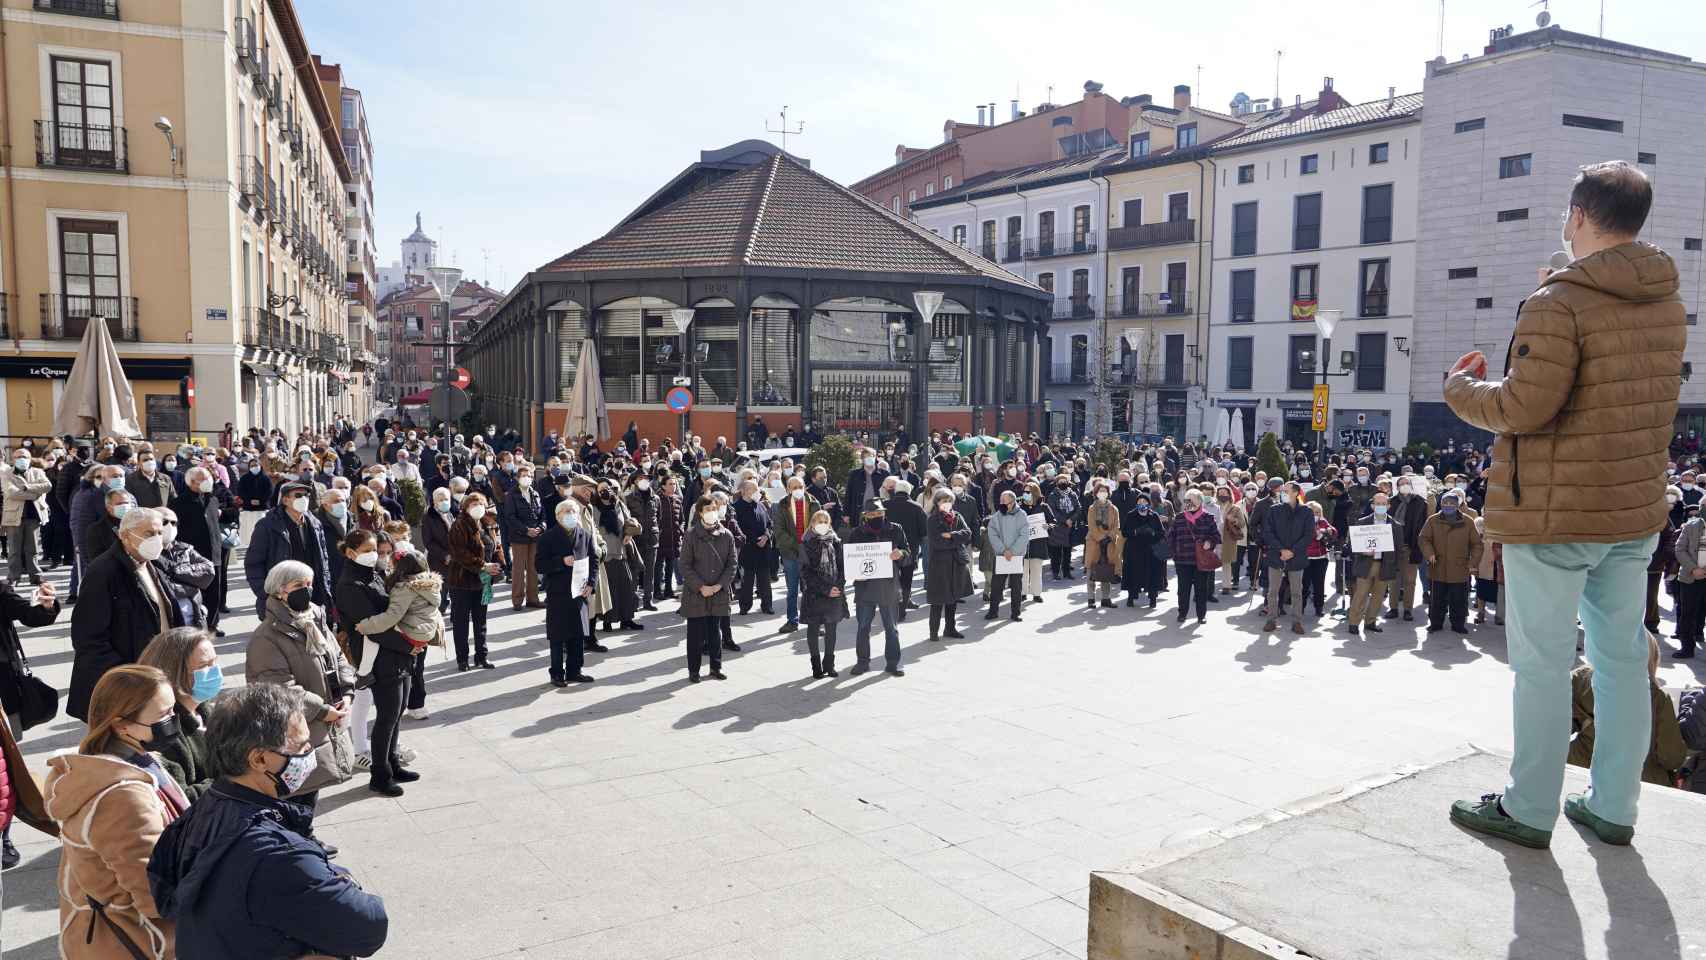 Unas 300 personas se concentran en Valladolid para revindicar la libertad religiosa frente a las medidas sanitarias 1